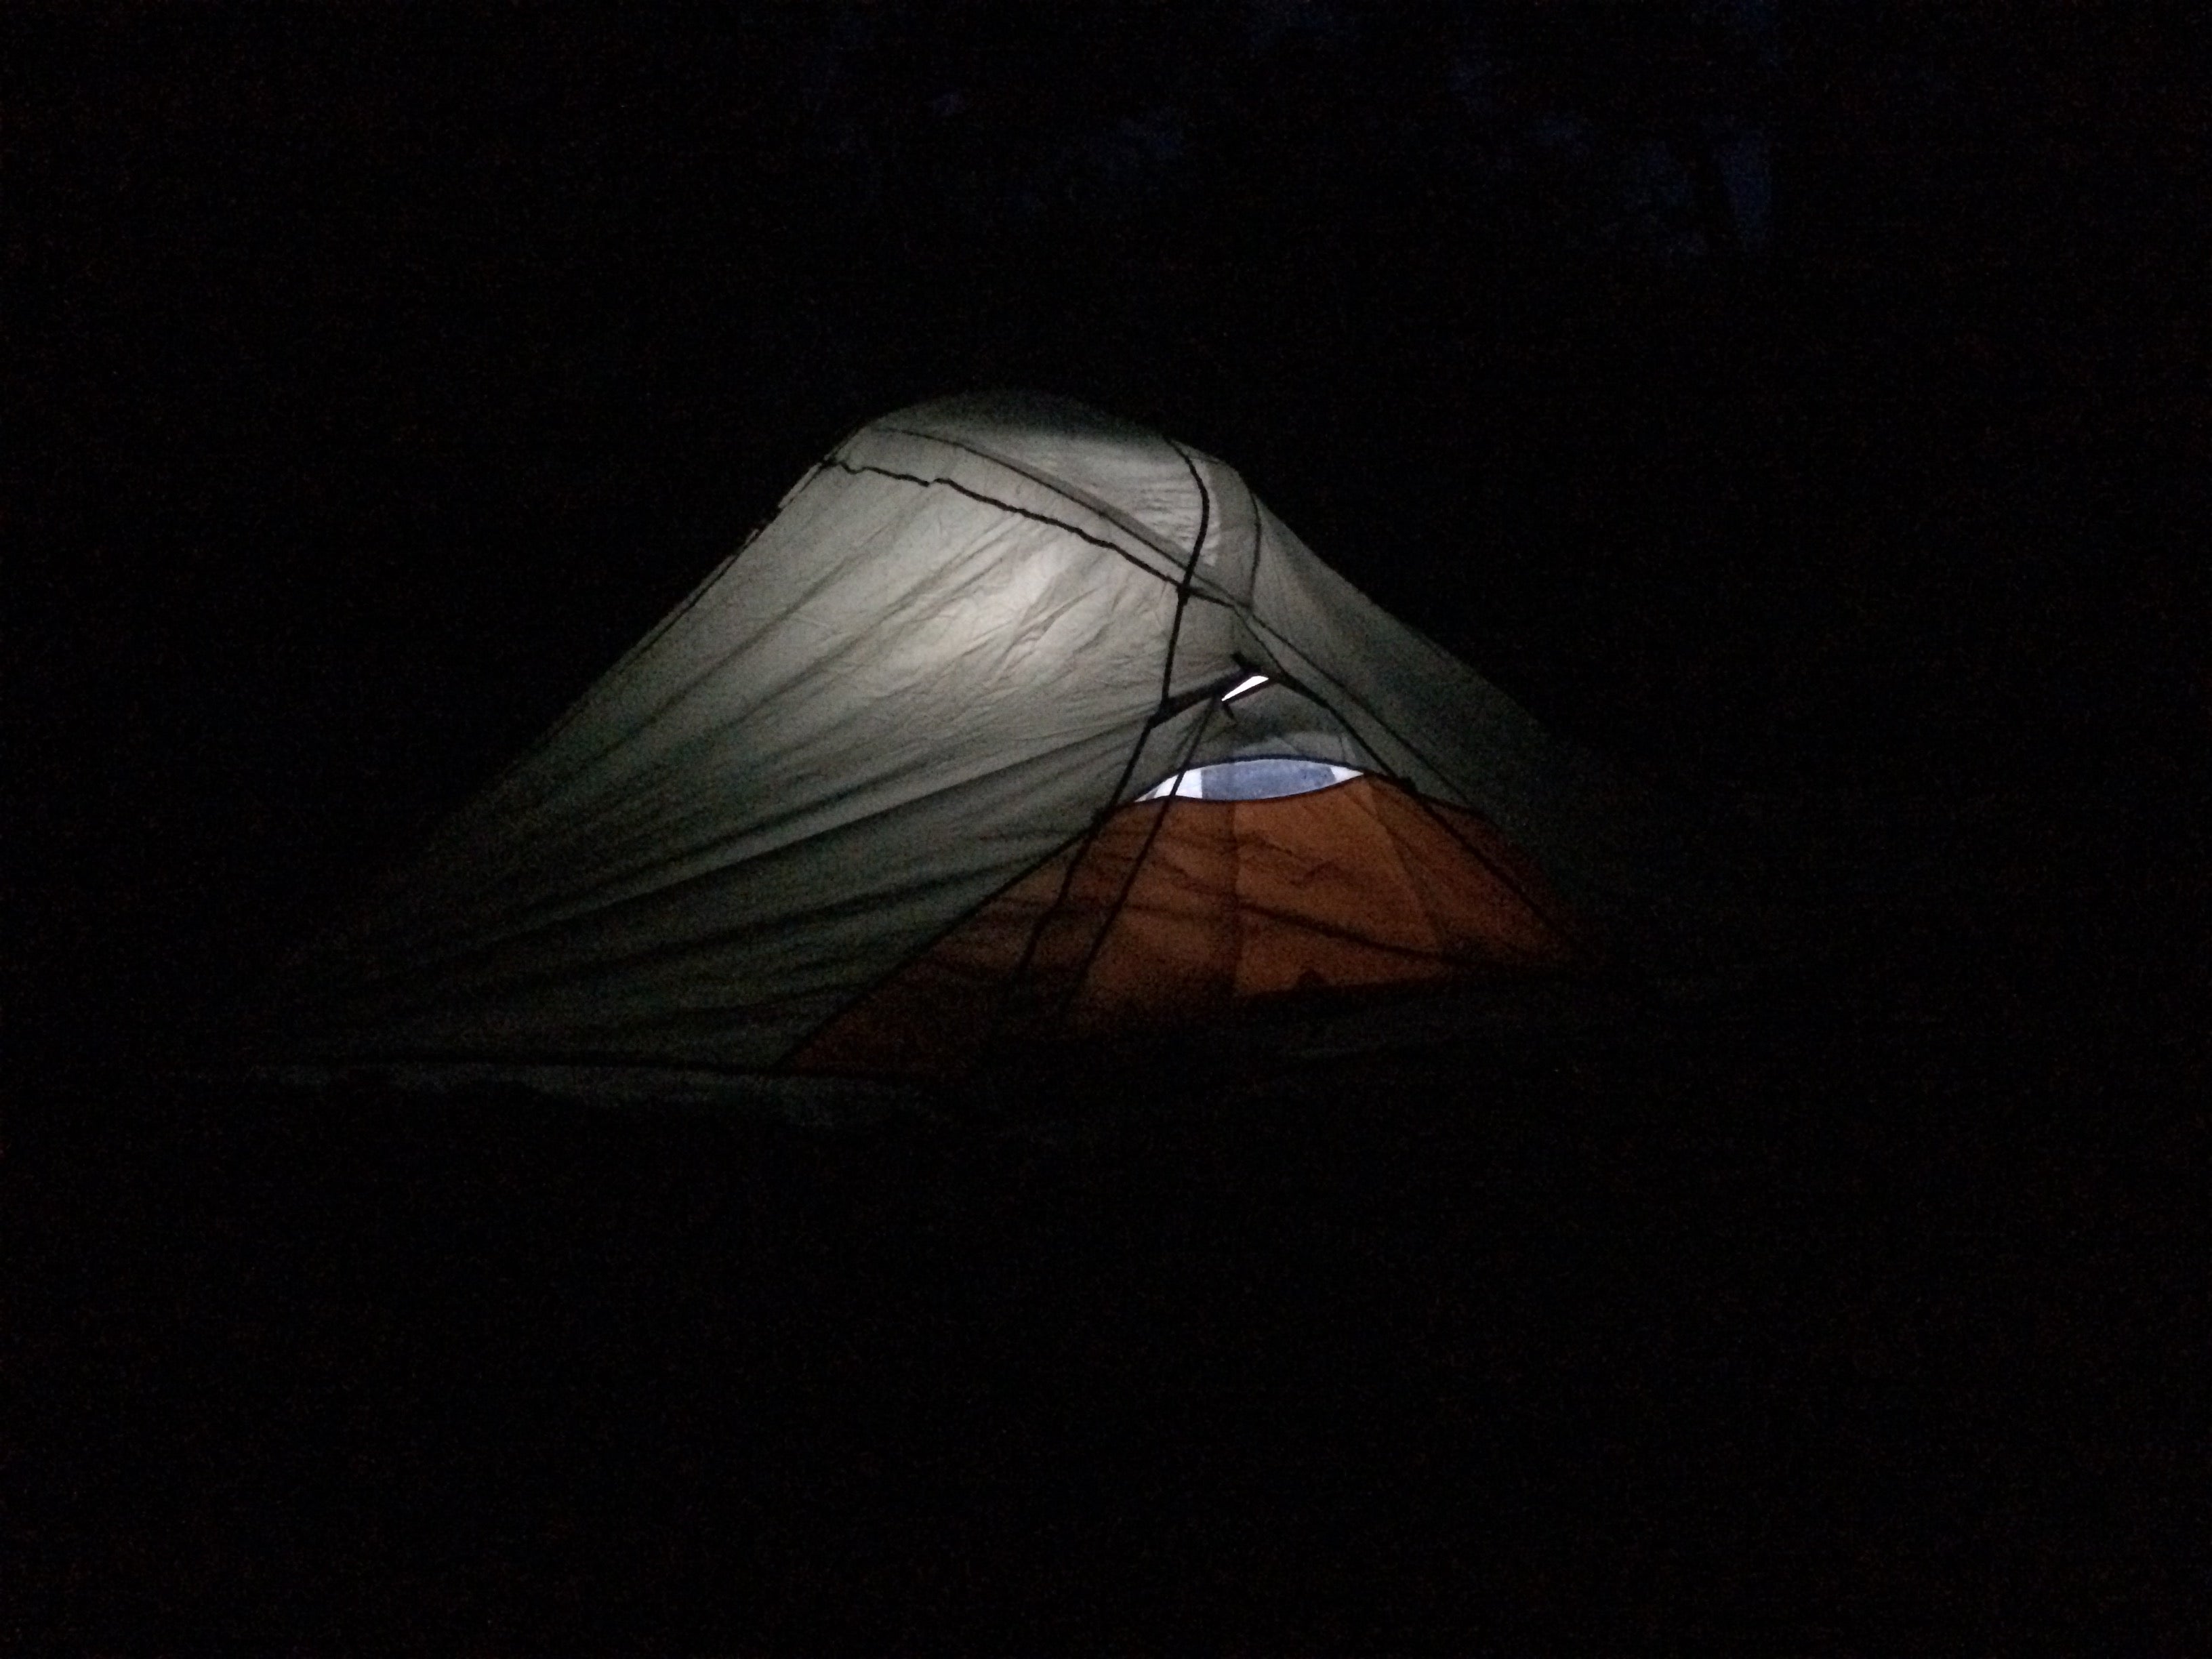 Campsite at night 